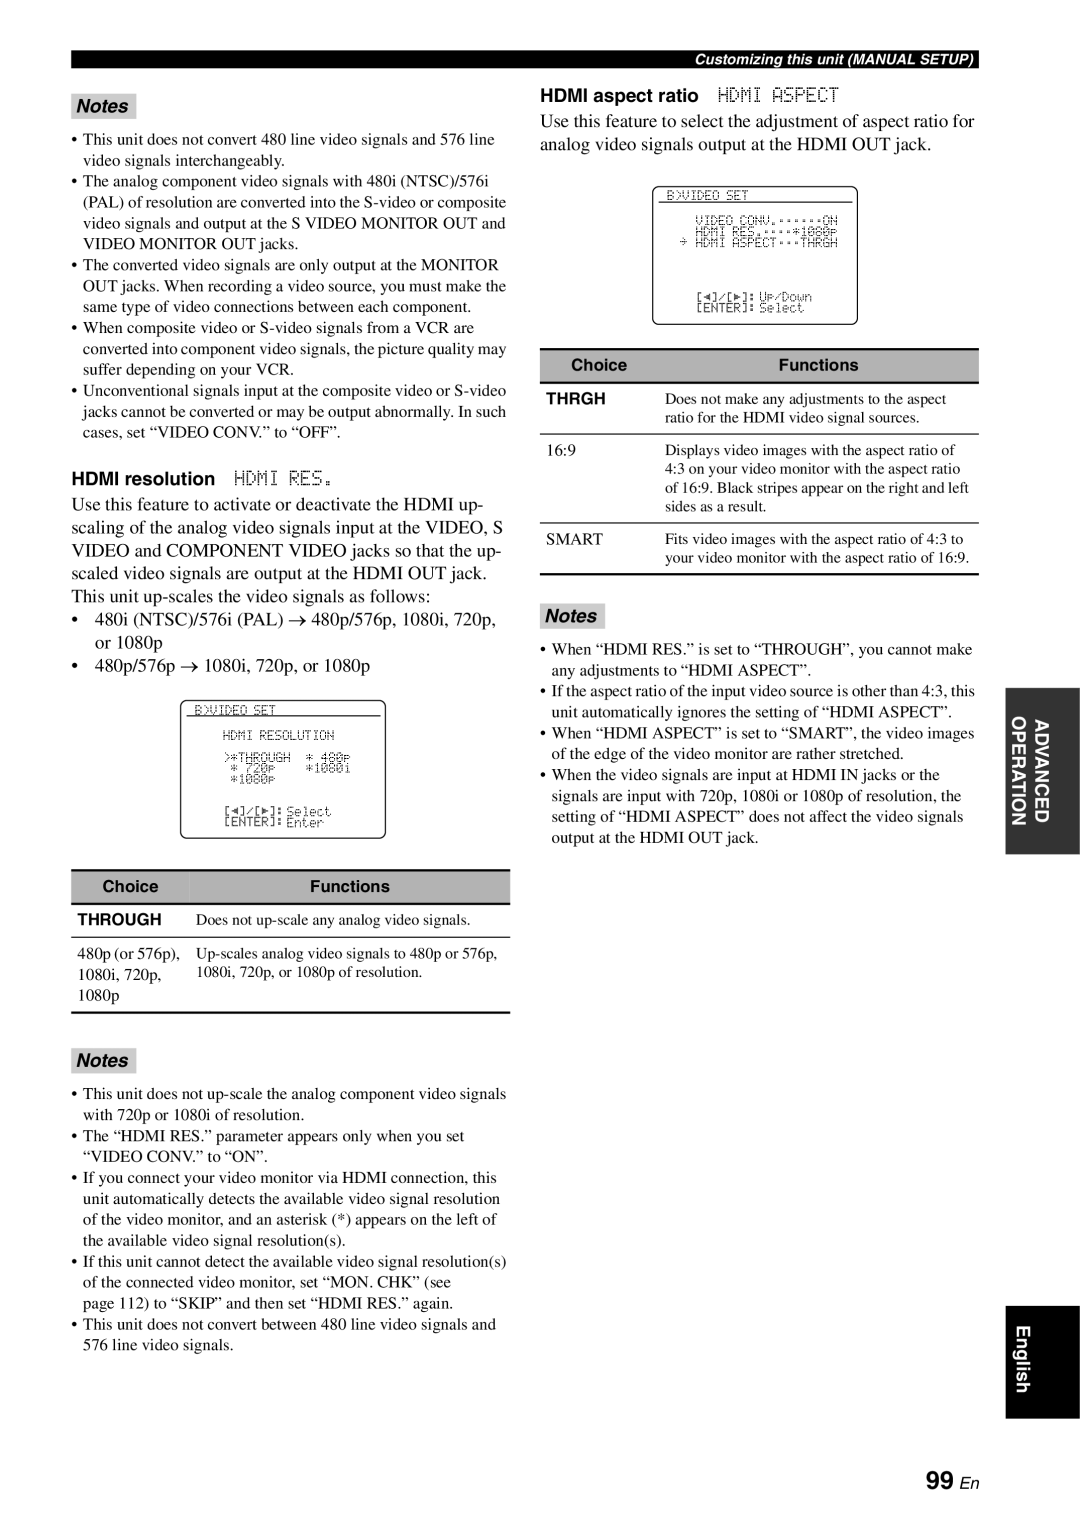 Yamaha RX-V863 owner manual 99 En, Notes, HDMI resolution HDMI RES, HDMI aspect ratio HDMI ASPECT 